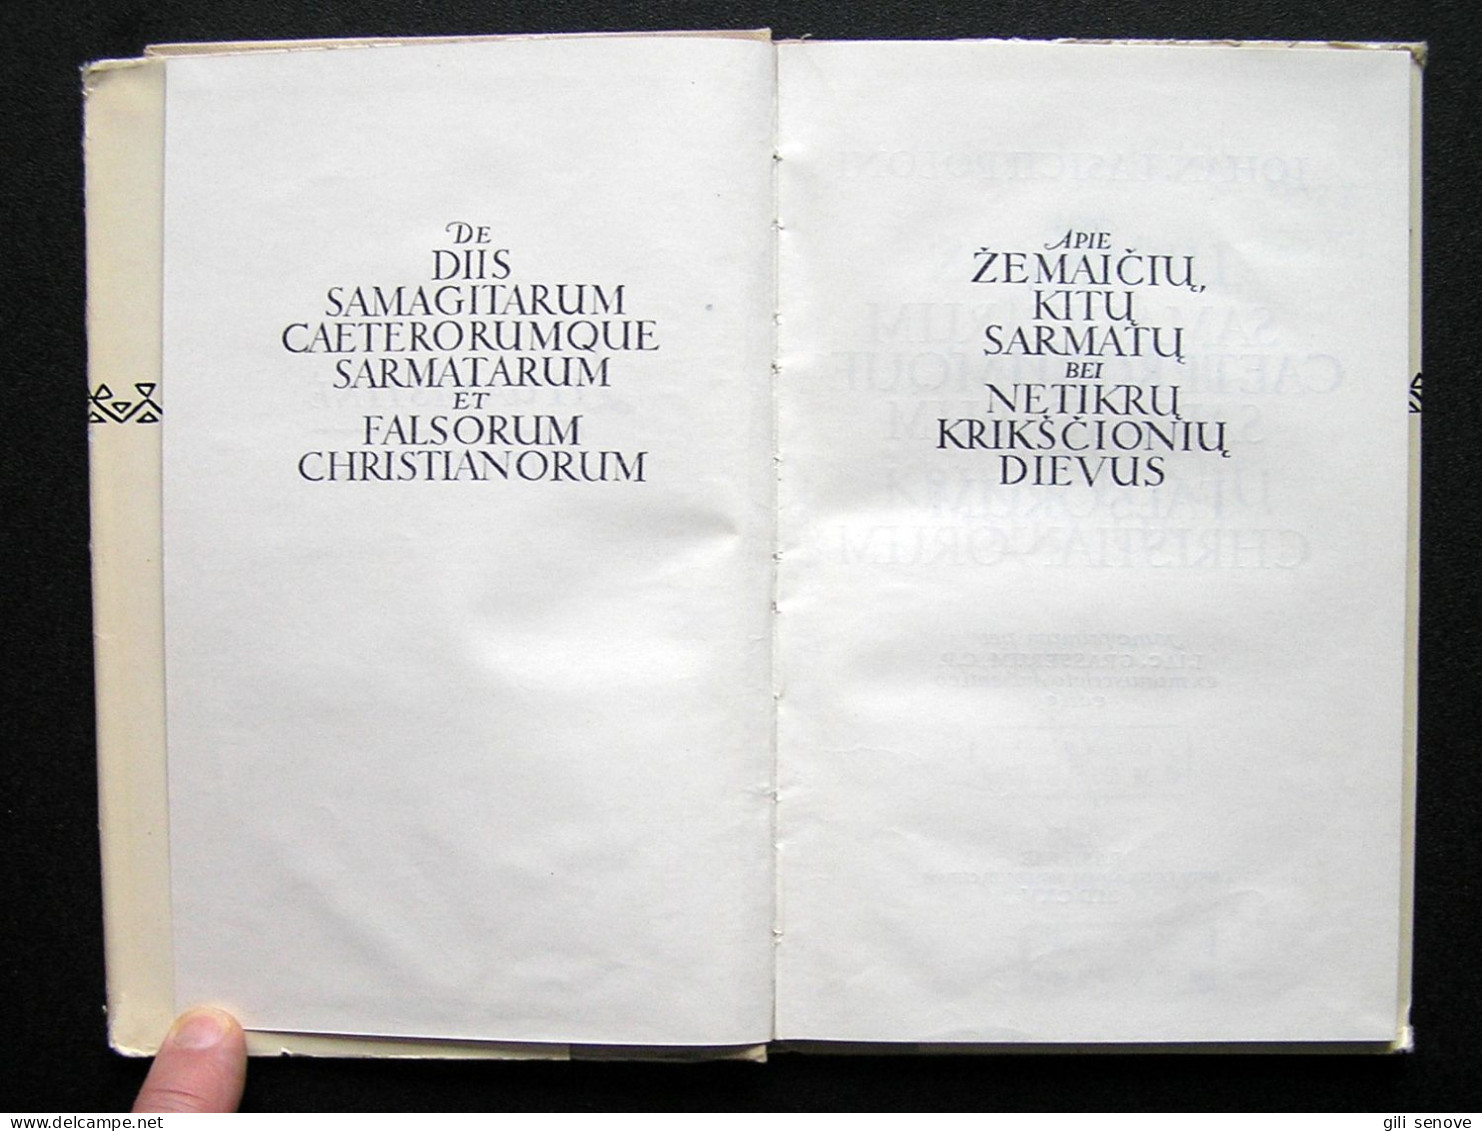 Lithuanian Book / Apie žemaičių Dievus By Lasickis 1969 - Cultural